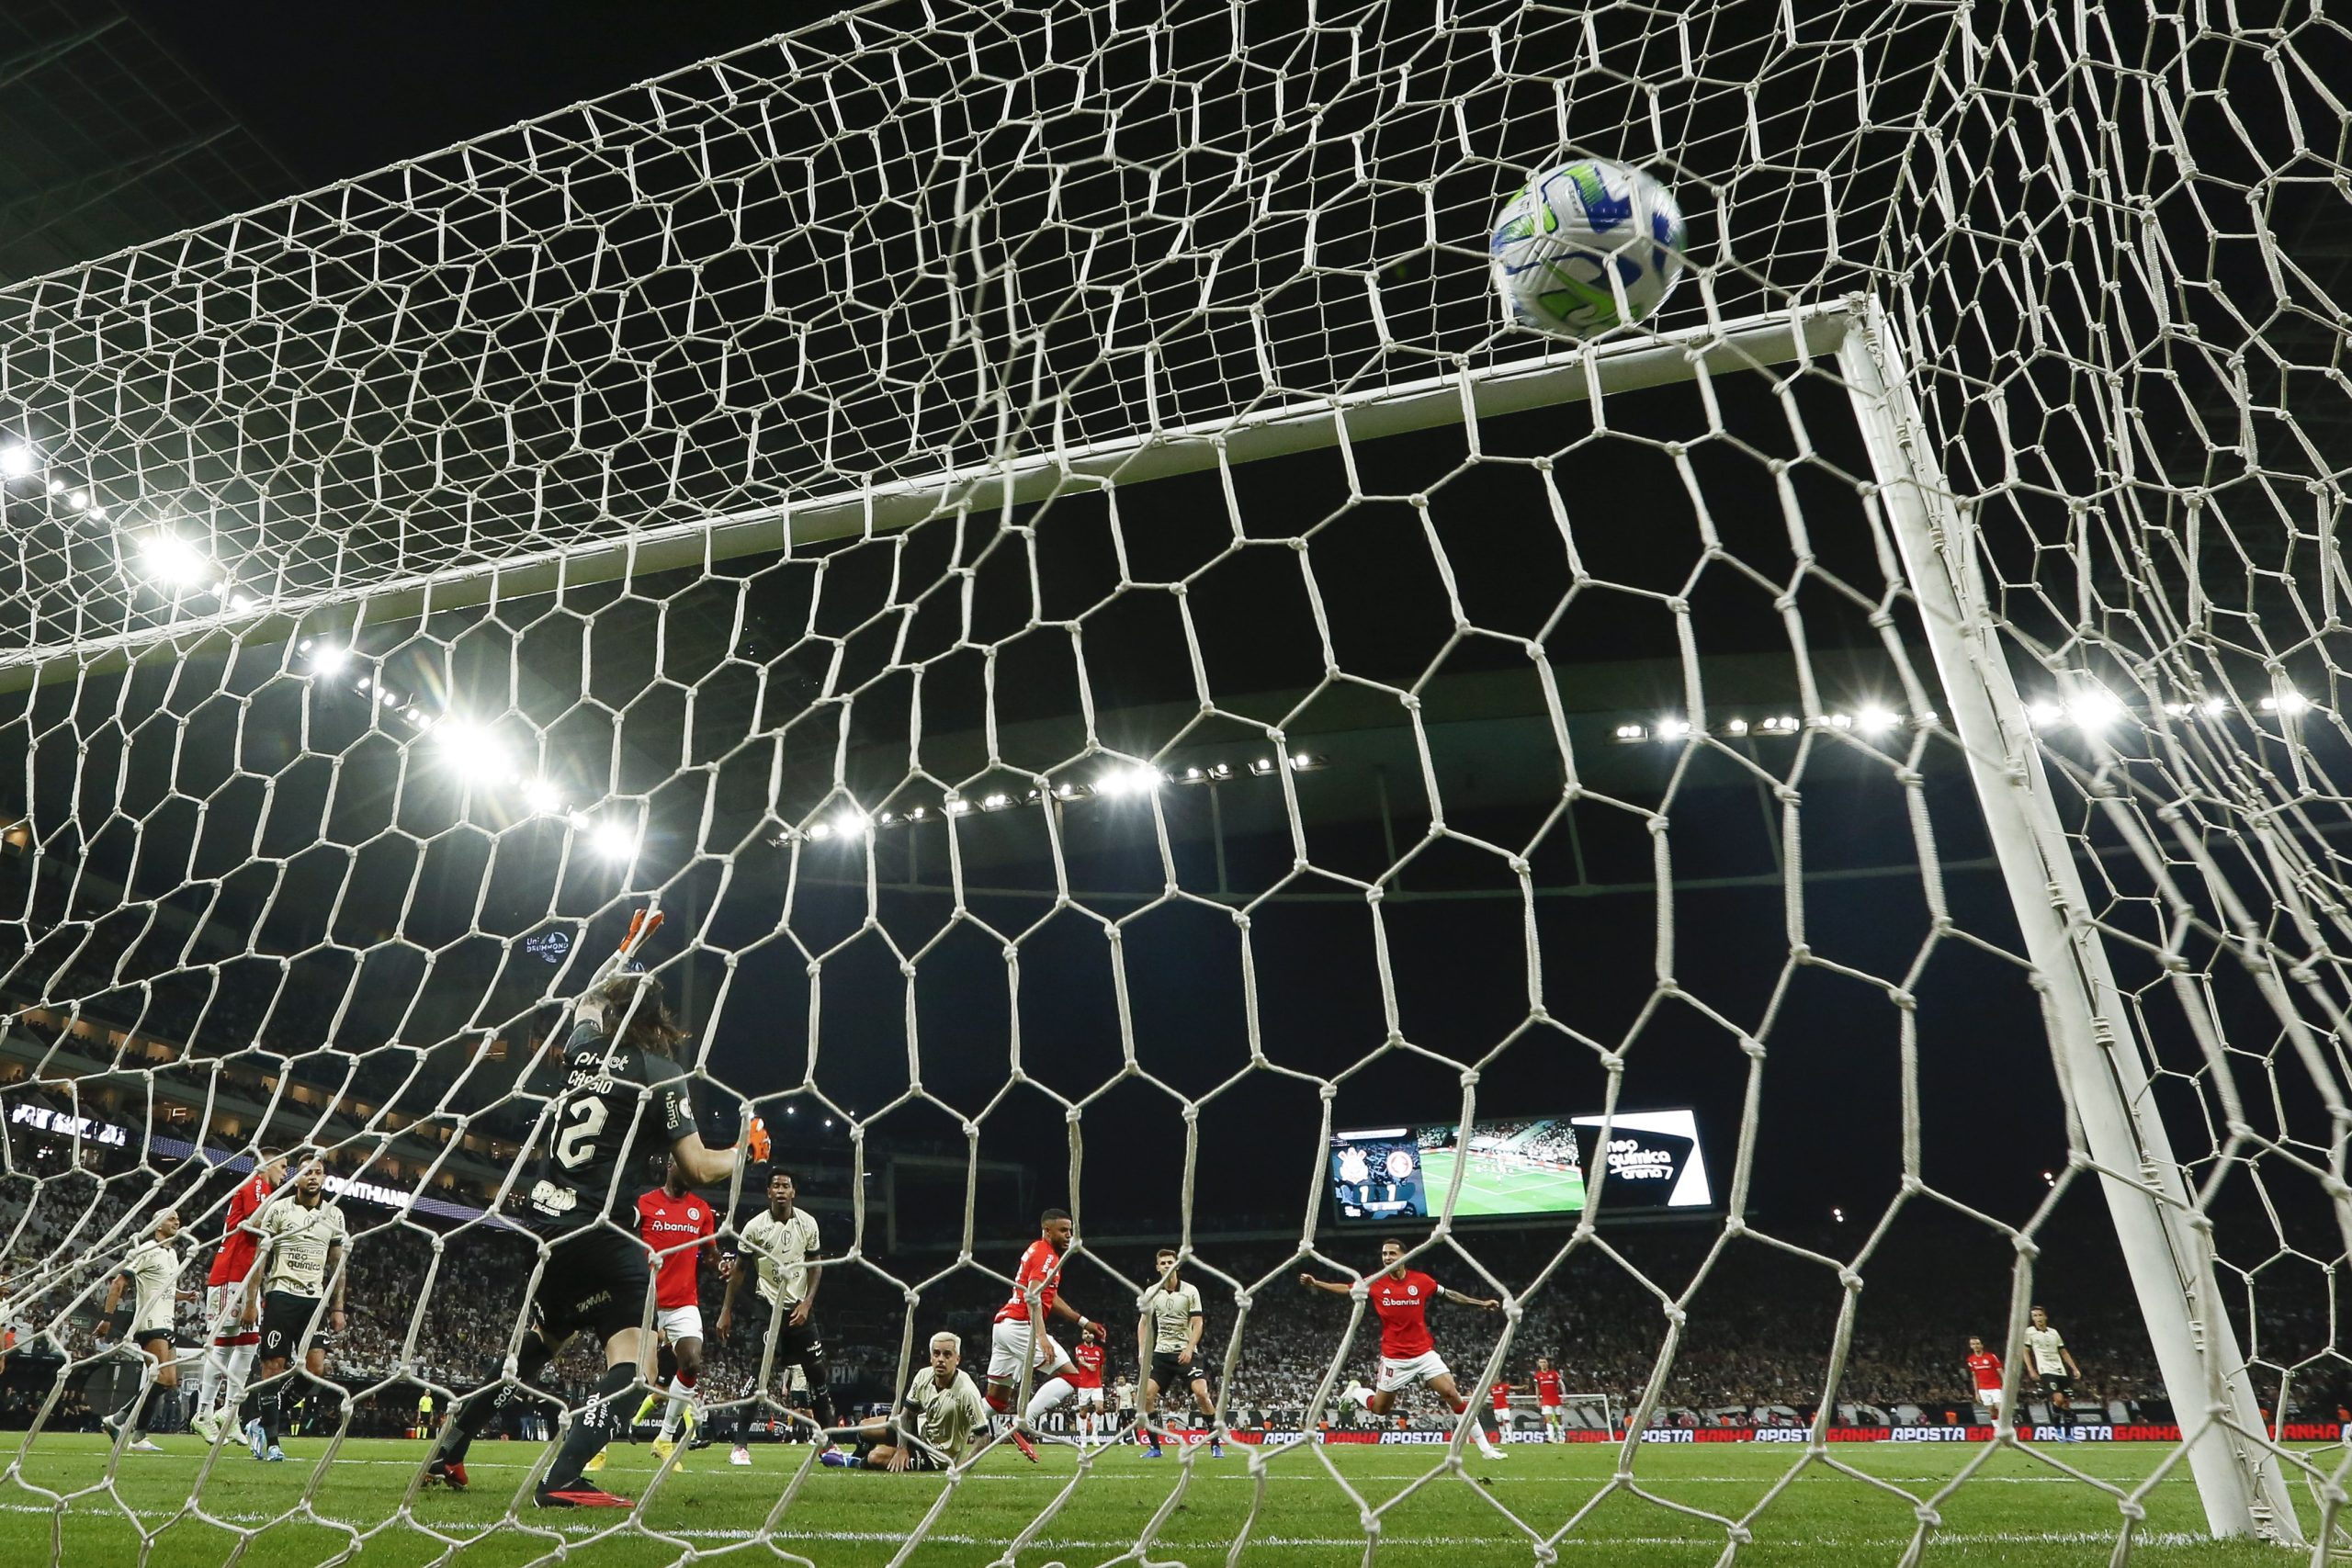 Goleiro marca um gol de tiro de meta e quebra recorde mundial; veja vídeo, futebol inglês